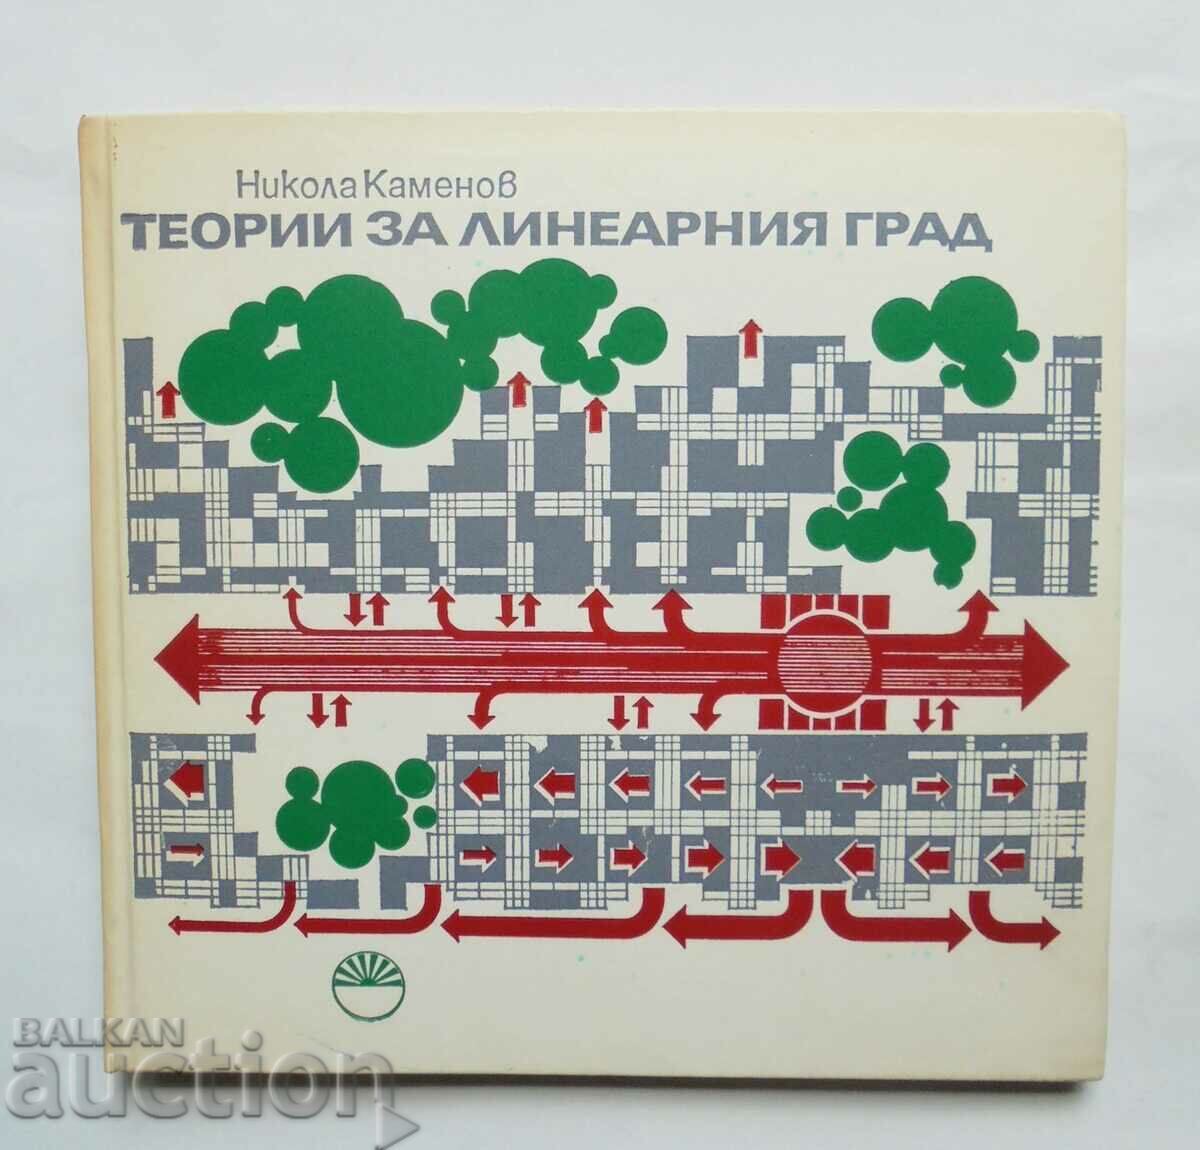 Теории за линеарния град - Никола Каменов 1983 г.